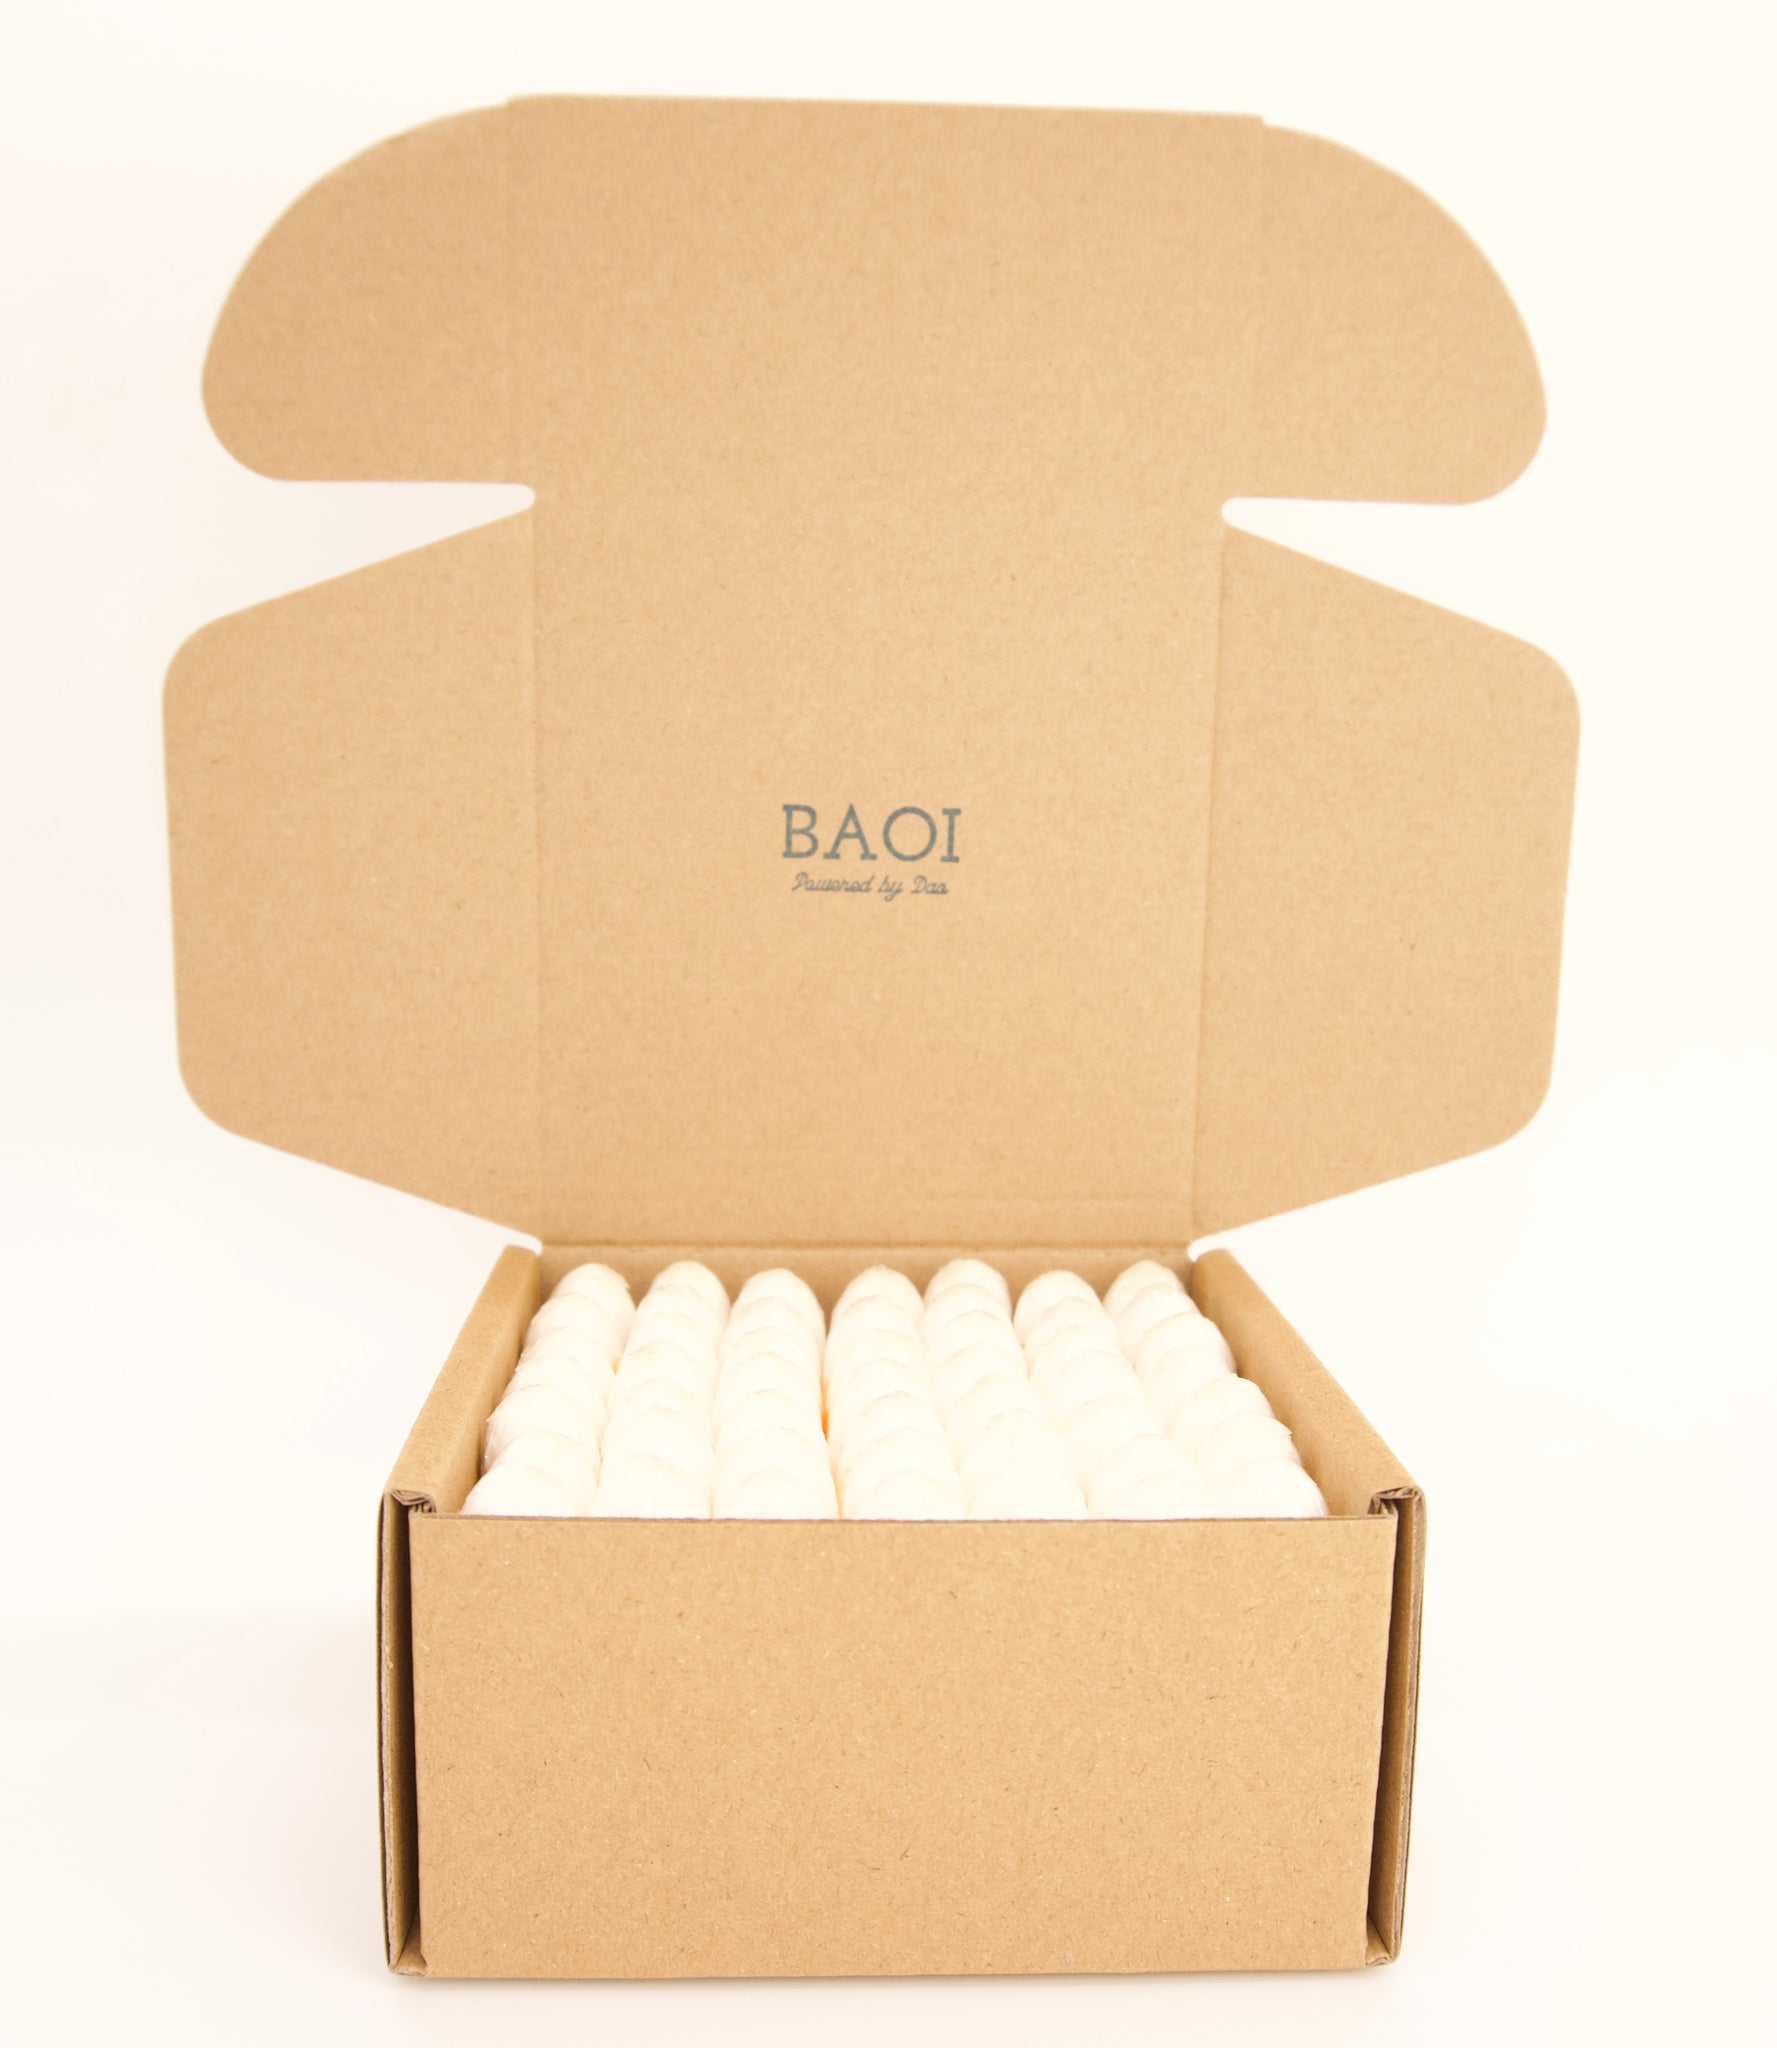 BAOI 100% Organic Tampons - 49 counts